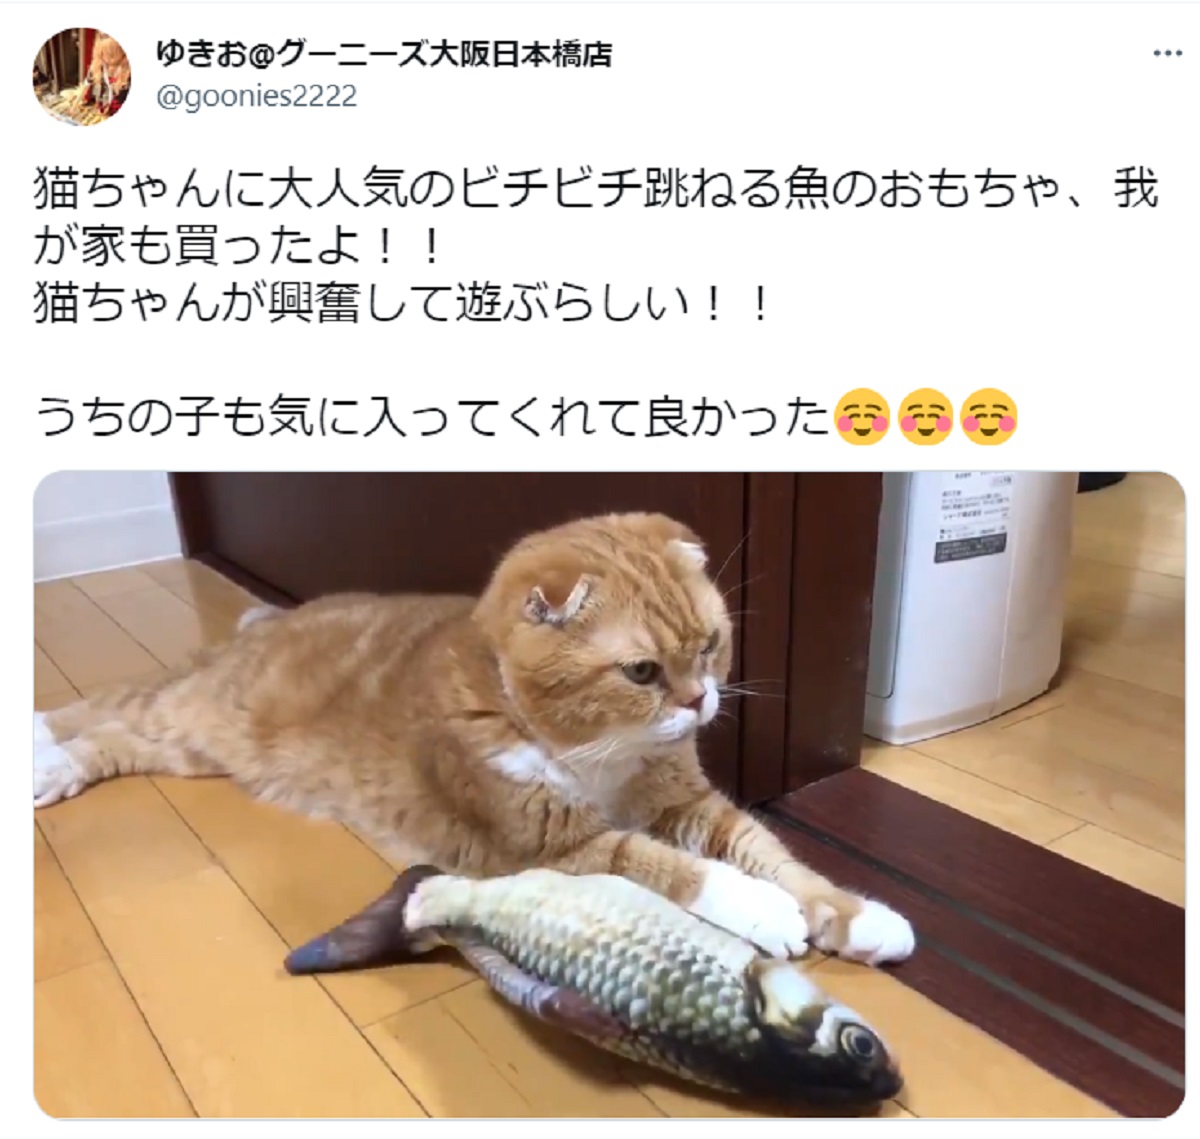 泰然自若な猫　ビチビチ跳ねる魚のおもちゃに無関心つらぬく